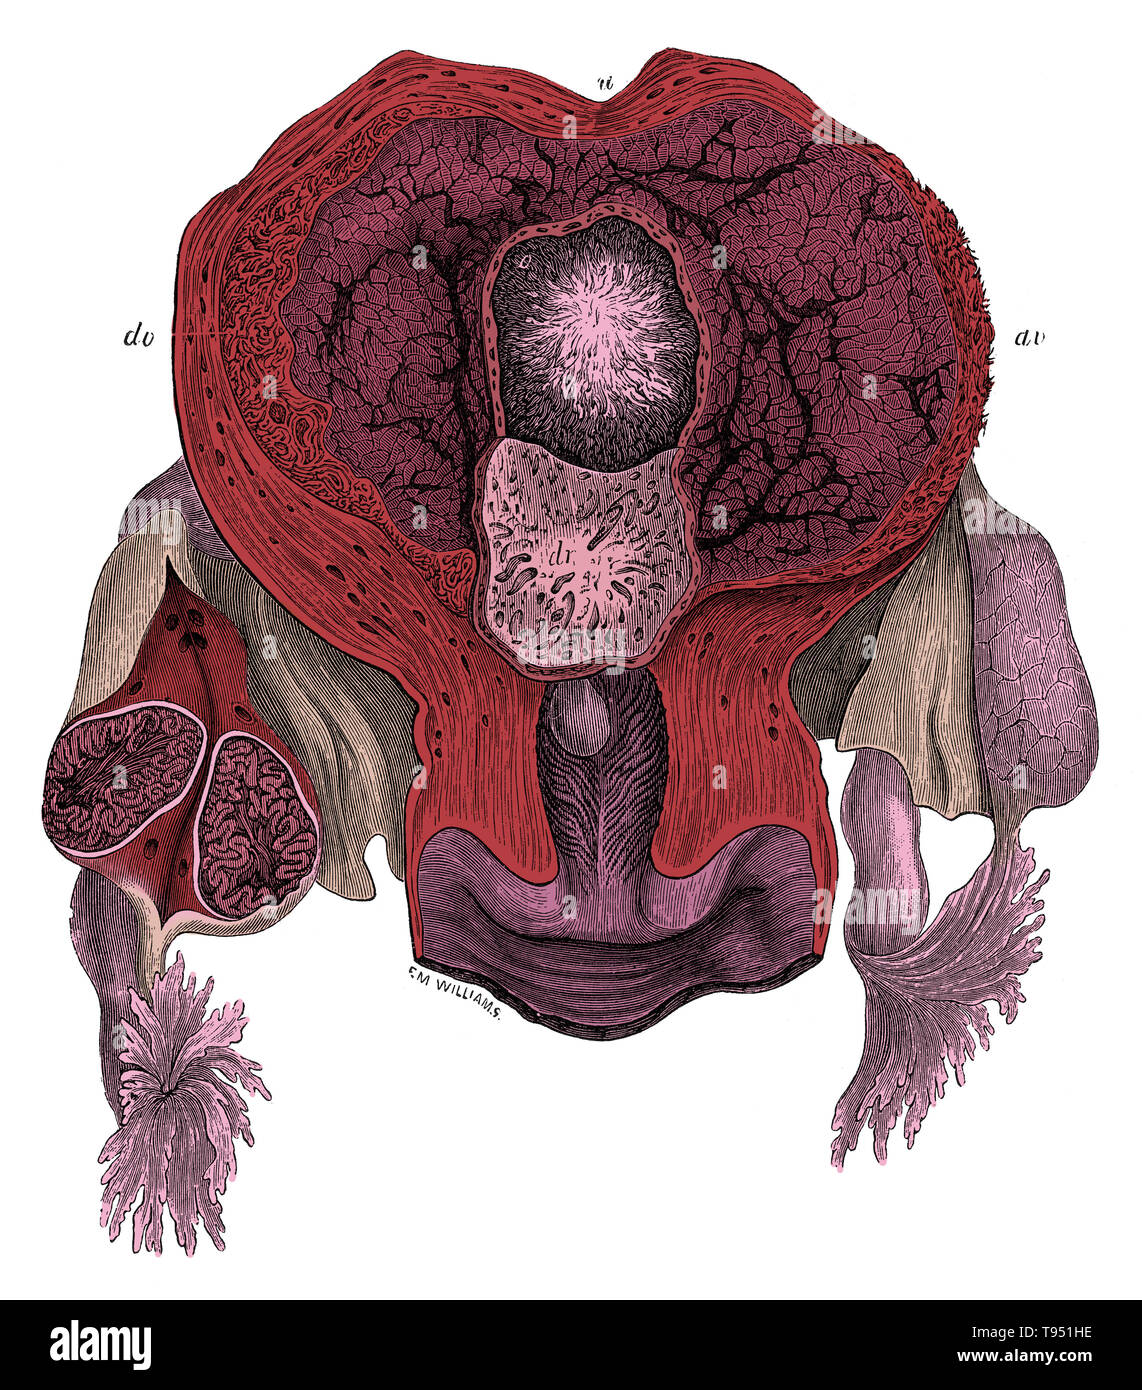 Vue de l'intérieur de l'utérus gravide au 25e jour. u, paroi utérine ; o, de l'ovule avec chorion villeux ; dv, decidua vera ; dr, decidua reflexa, réparties autour de la marge de l'ovule, et se tourna vers le bas de façon à exposer son piqué dont la surface a été retiré de l'ovule. L'ovaire droit est divisé, et montre dans l'article l'état du début dupliquée corps jaune. Jones Quain (novembre 1796 - janvier 31, 1865) était un anatomiste, professeur d'anatomie et de physiologie de l'Université de Londres, et l'auteur d'éléments de l'anatomie. Cette image a été colorisées. Banque D'Images